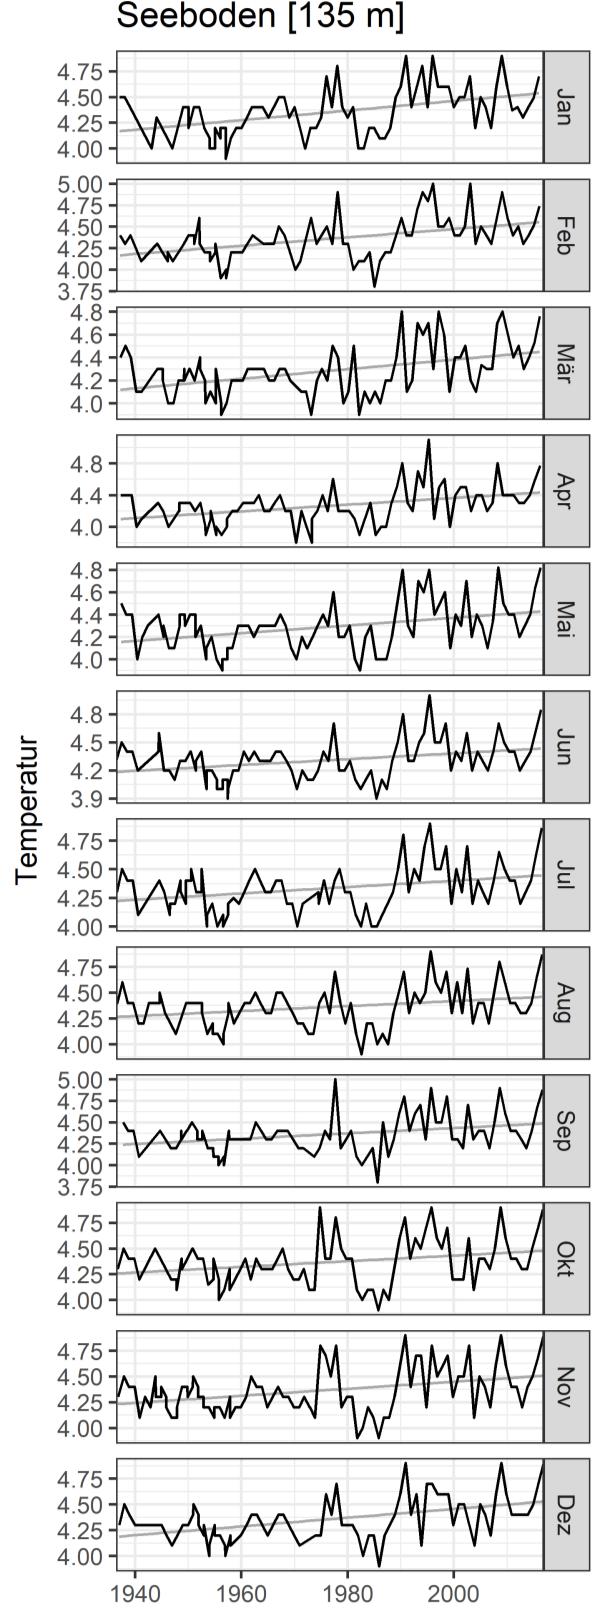 Die linke Spalte zeigt die Temperaturen an der Wasseroberfläche (0 m), die rechte Spalte jene ein Meter über dem Seeboden auf 135 m Tiefe. Graue Linien zeigen den Trend als lineare Regression.